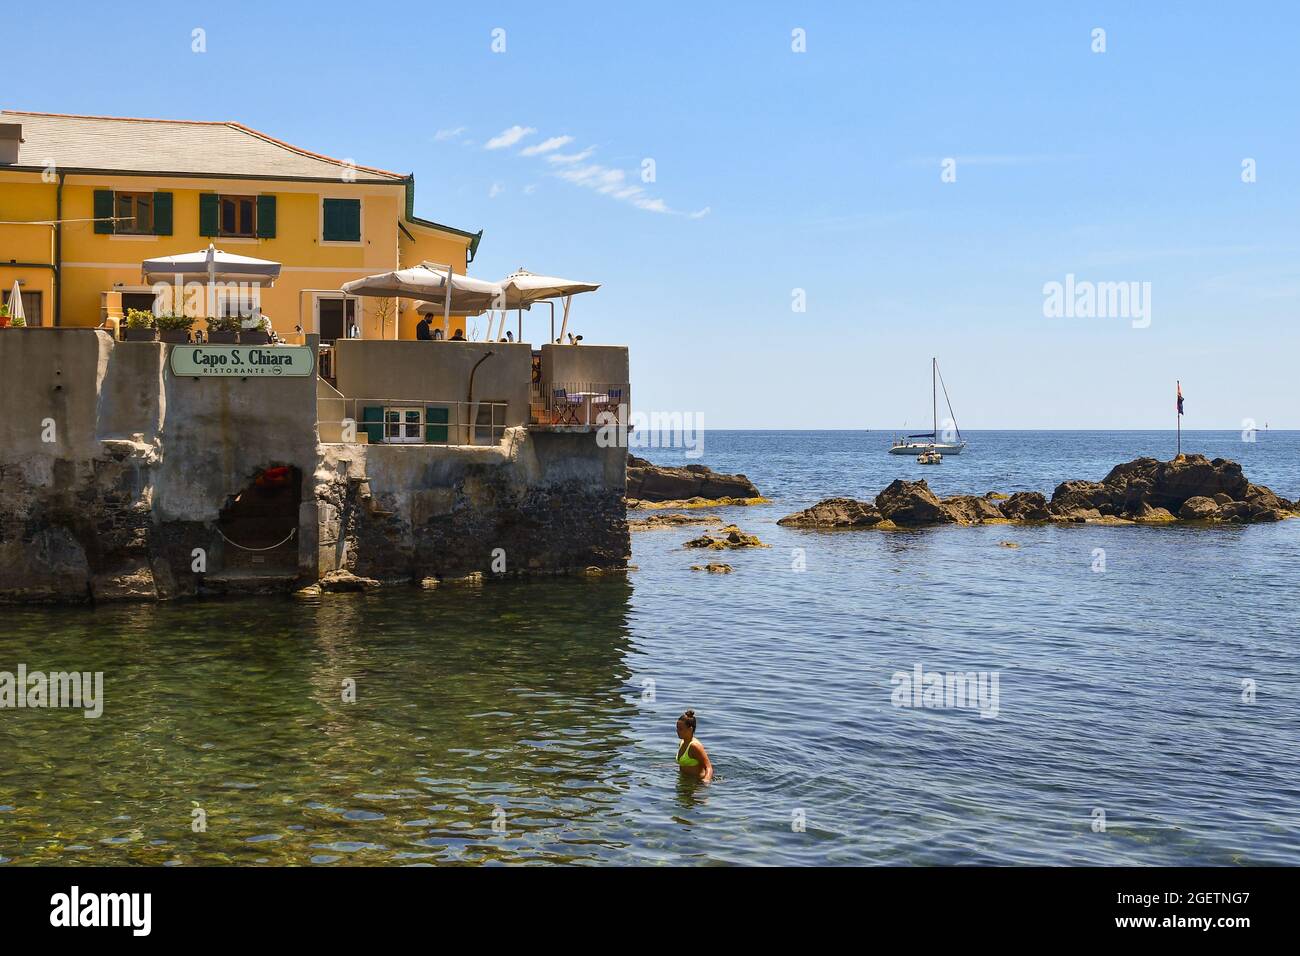 Une femme se rafraîchit sur le bord de mer du petit village de pêcheurs tandis que les touristes dînent sur la terrasse d'un restaurant, Boccadasse, Gênes, Italie Banque D'Images